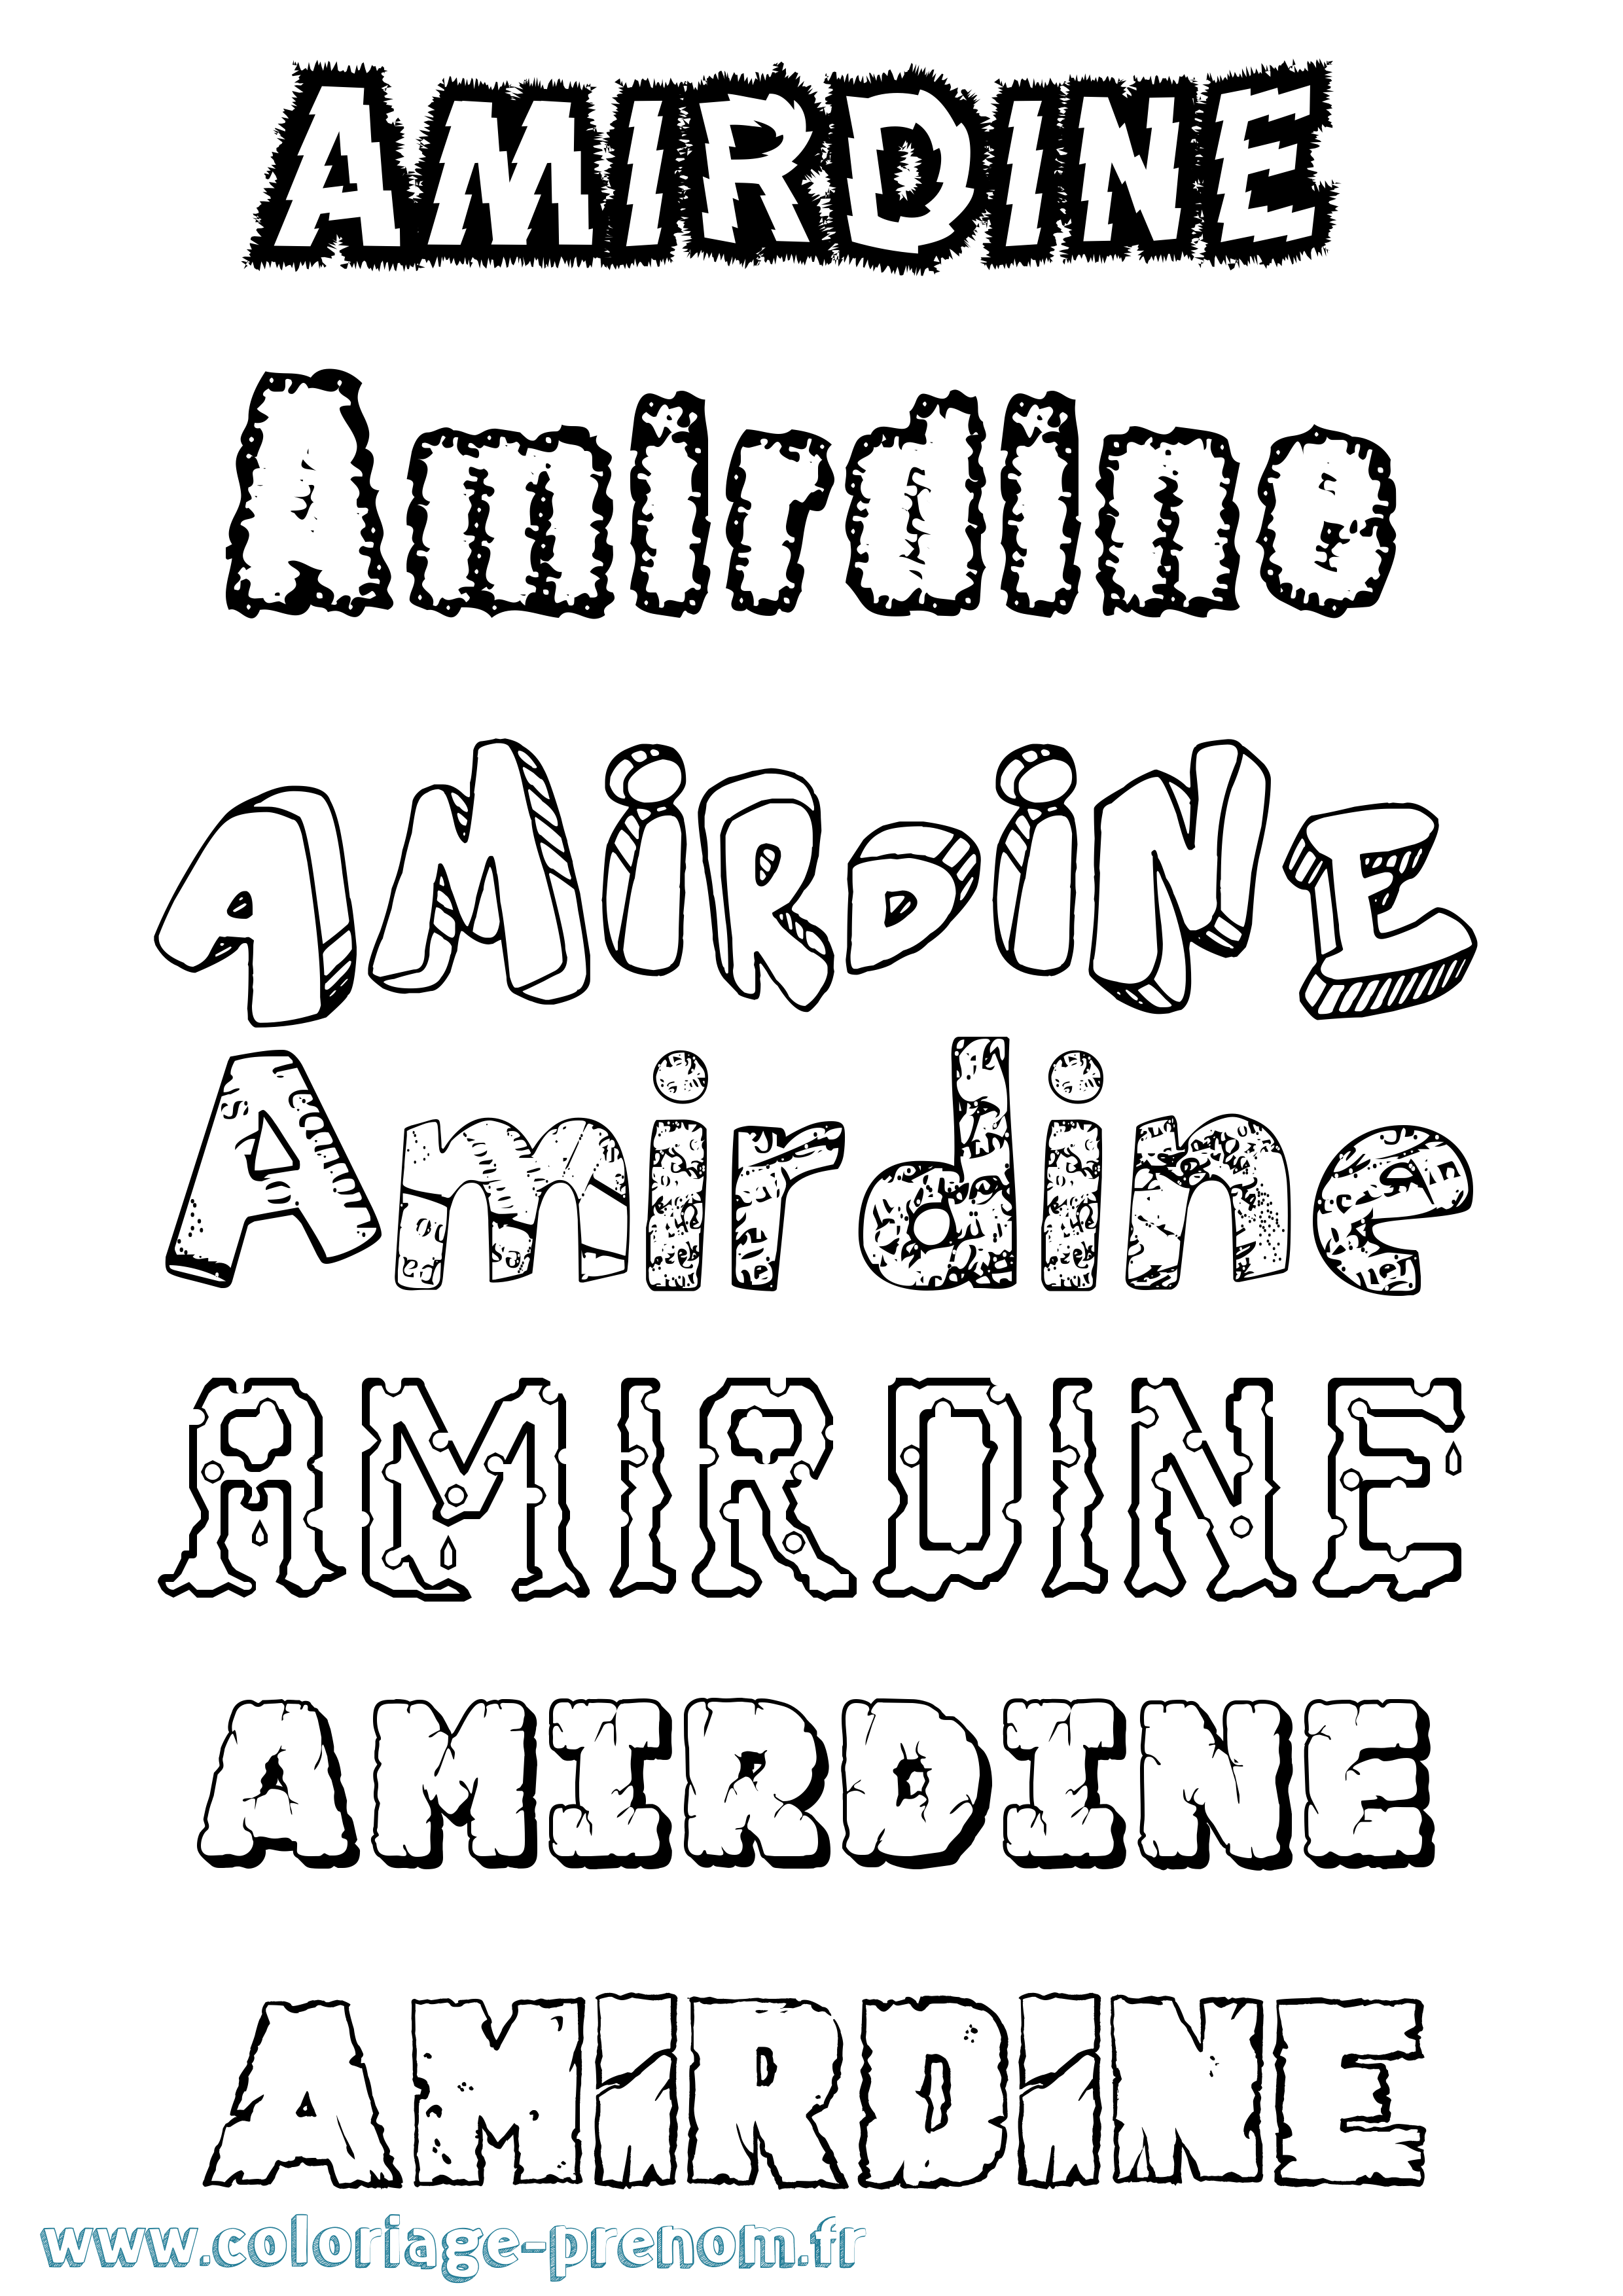 Coloriage prénom Amirdine Destructuré